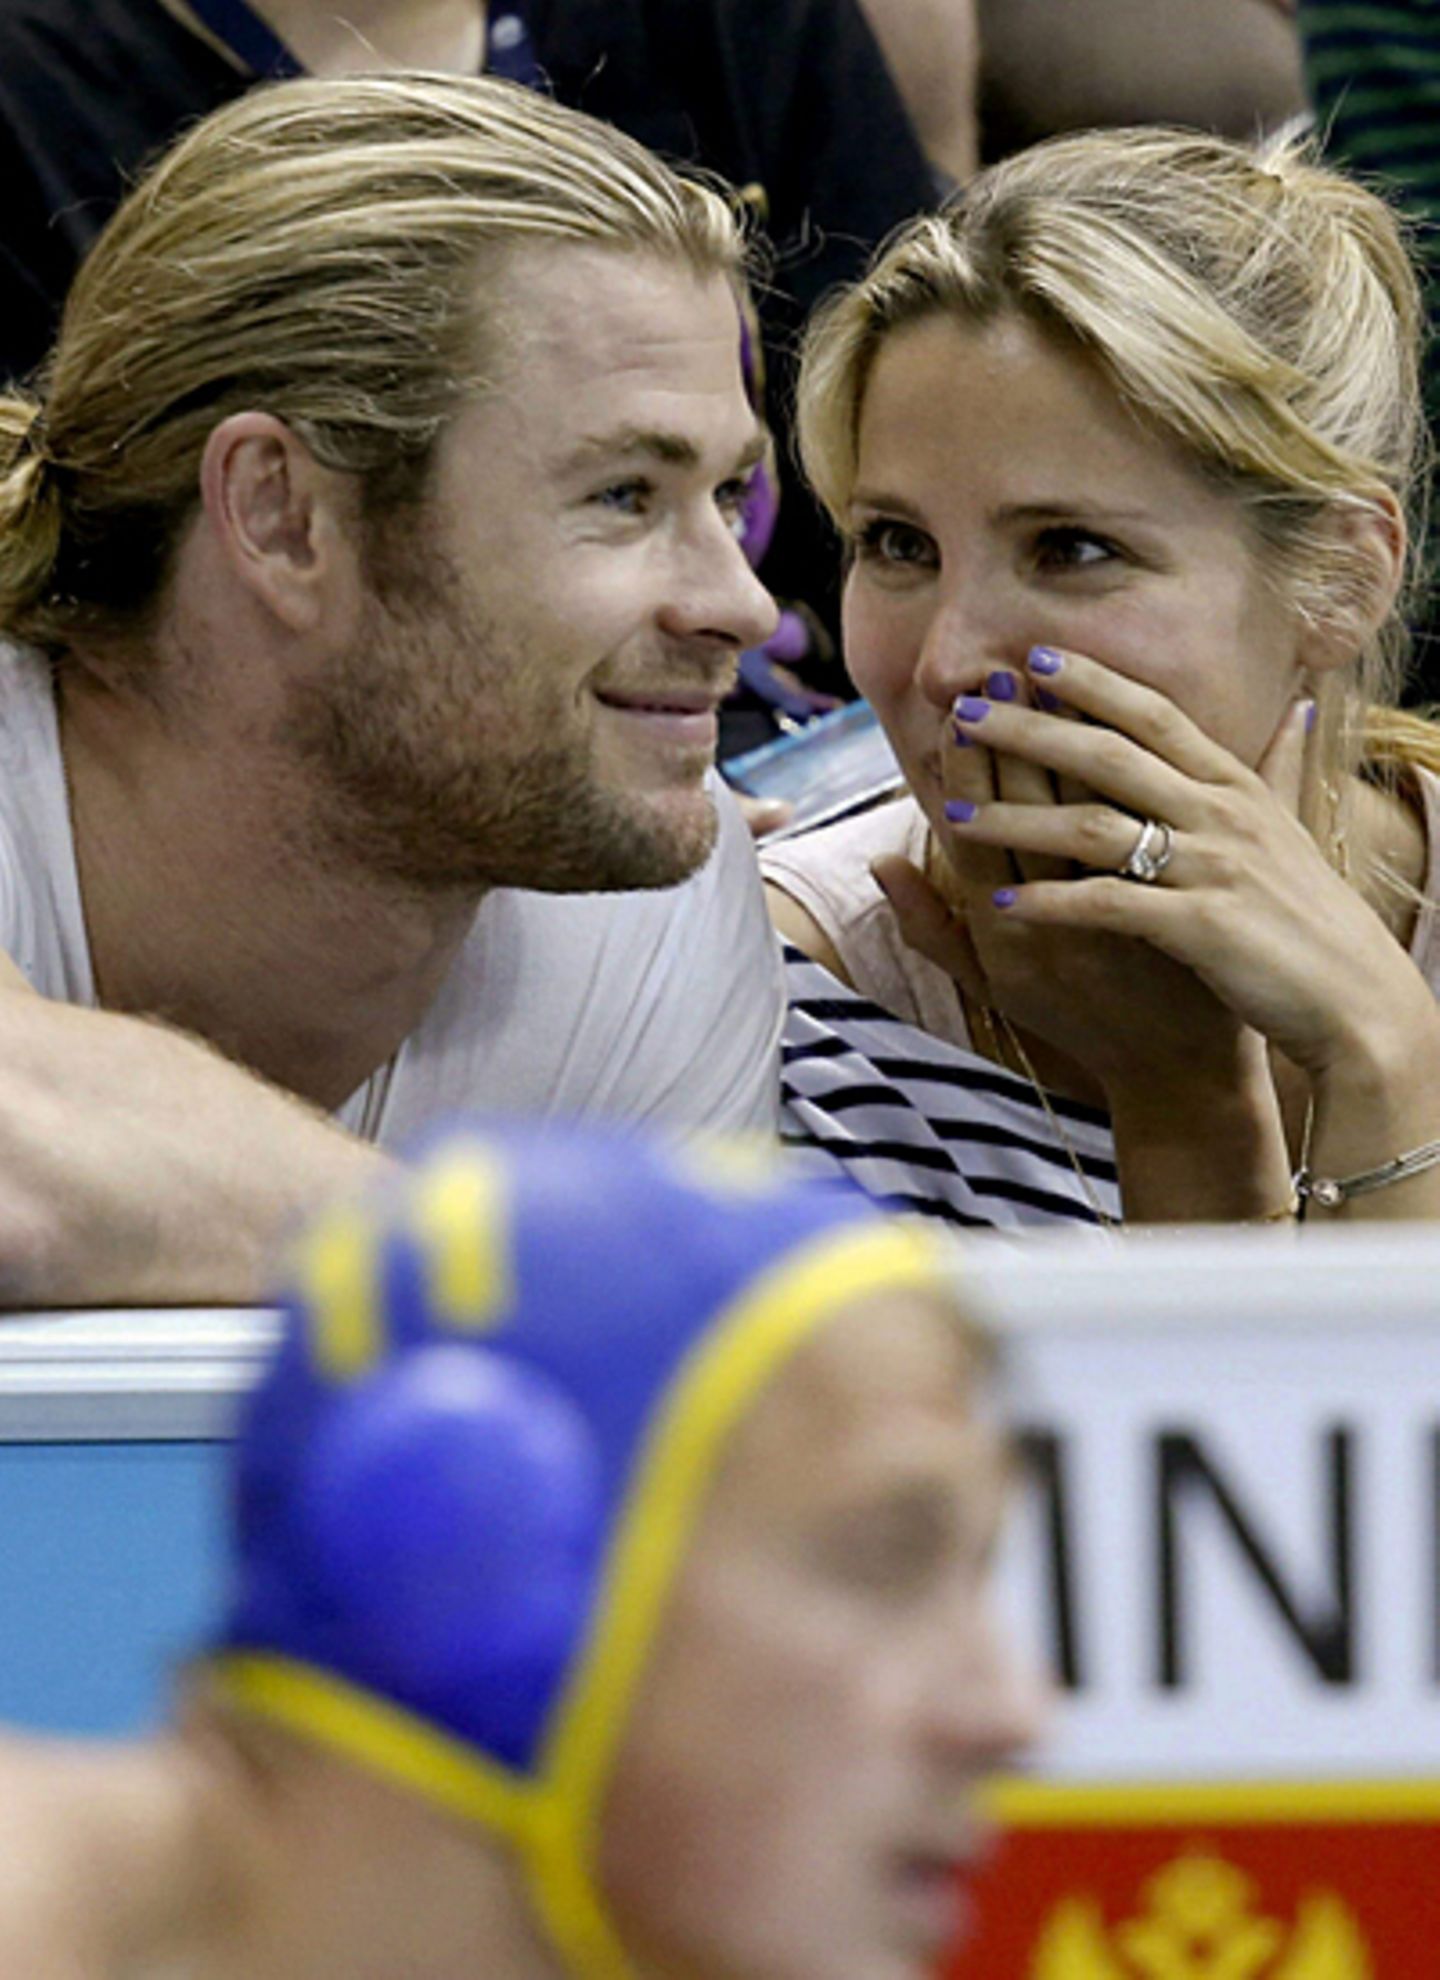 Chris Hemsworth und seine Frau Elsa Pataky verfolgen das Wasserpolospiel zwischen ihren Landsmännern aus Spanien und Montenegro.